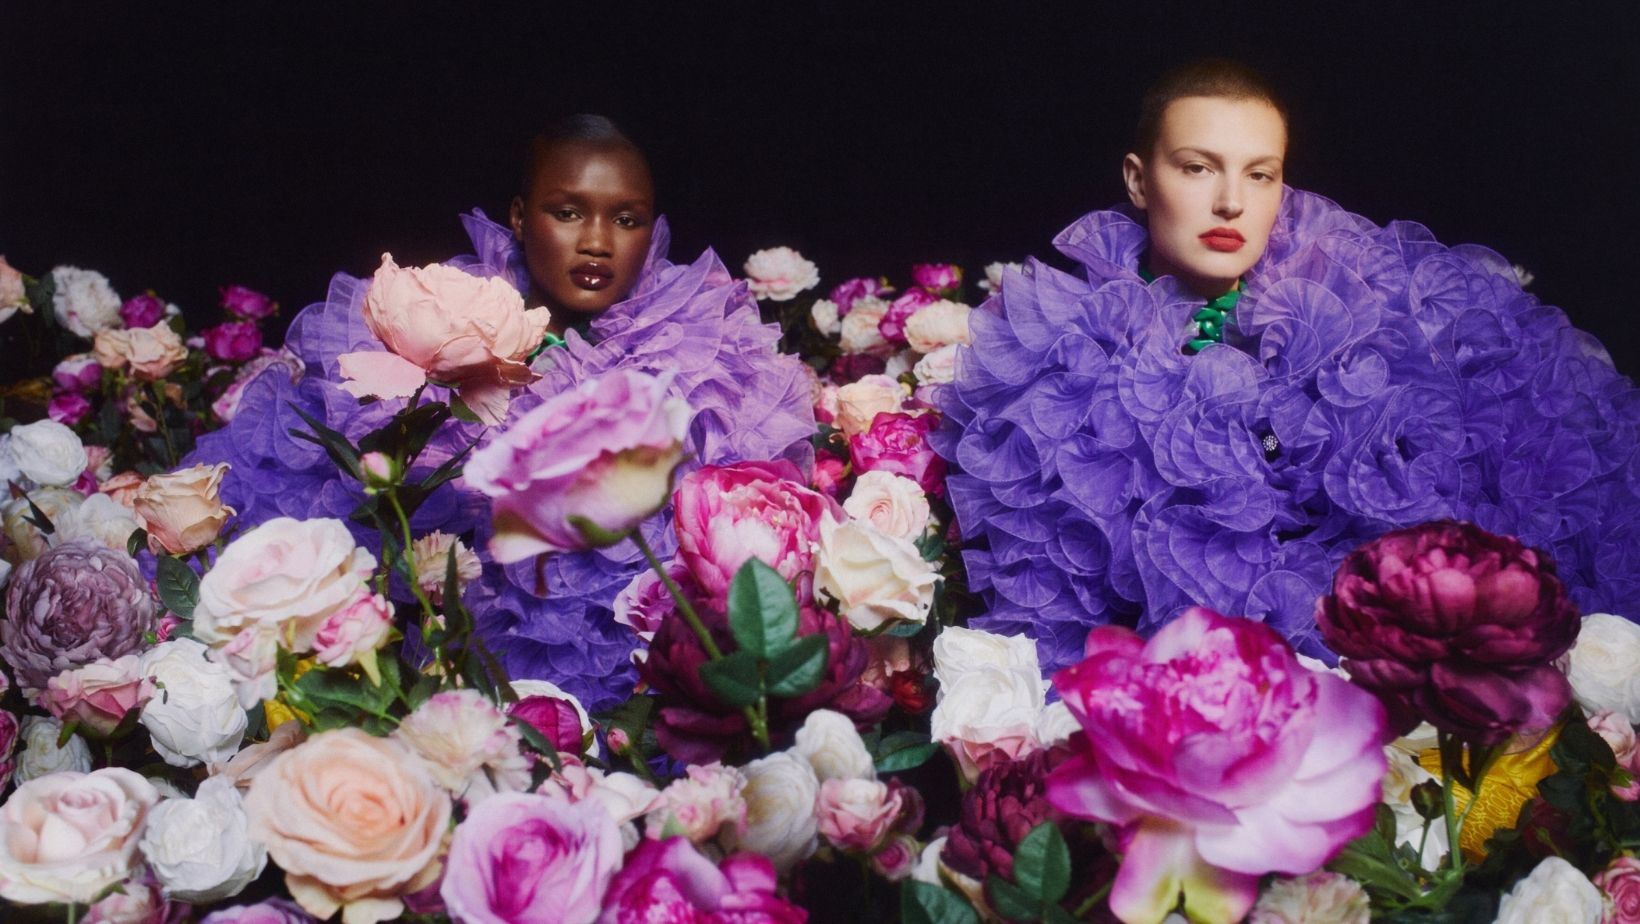 Hravá kolekcia Iris Apfel x H&M zažiarila aj v módnom editoriáli Top Fashion